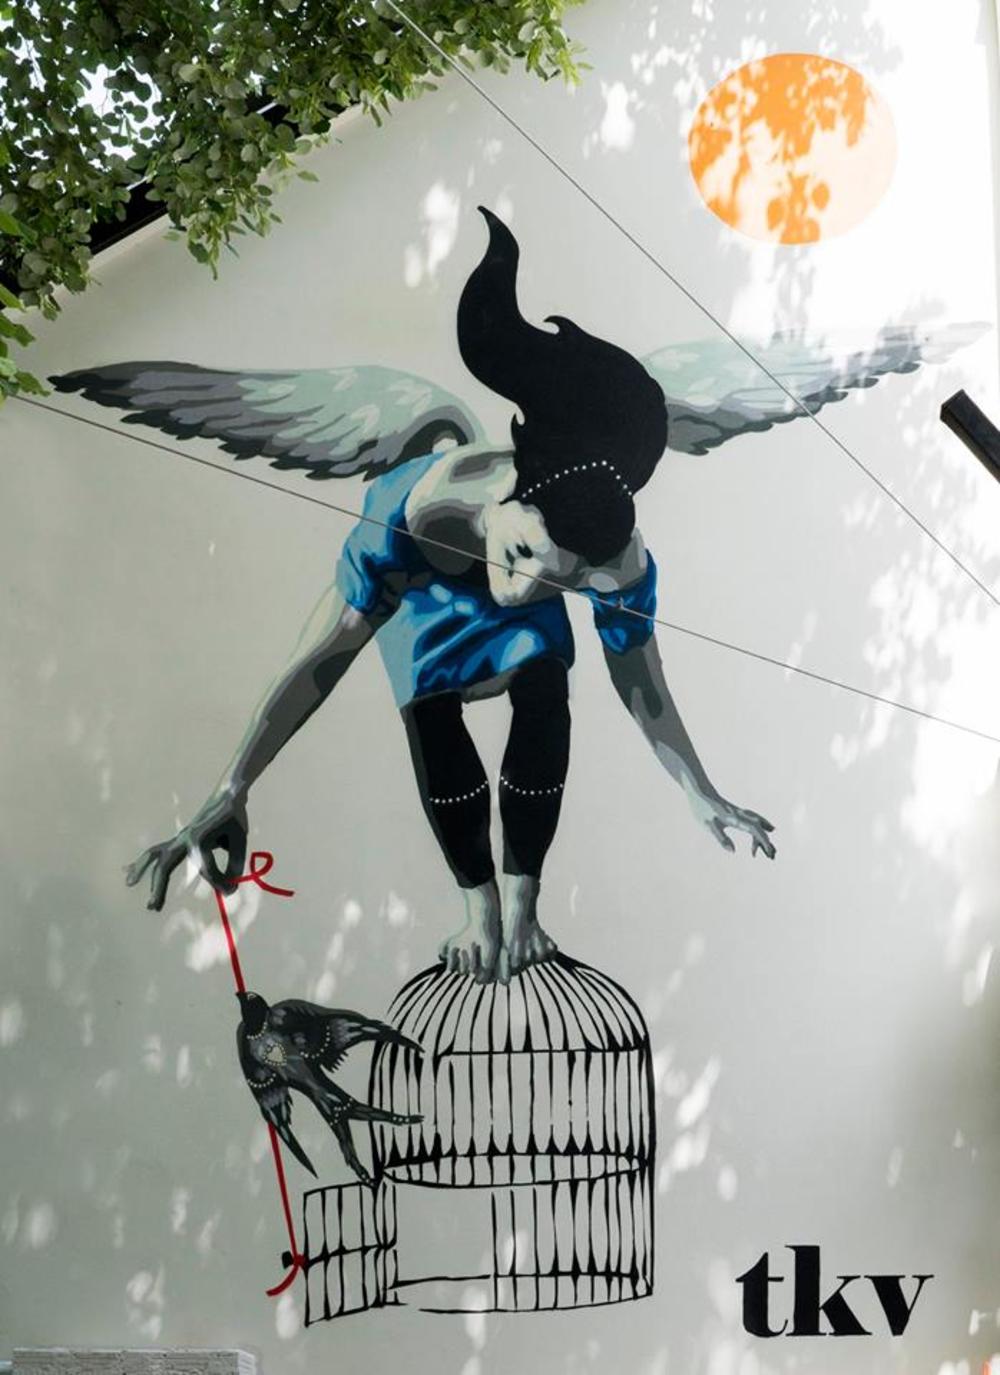 TKV je najpoznatija domaća streetart umetnica  